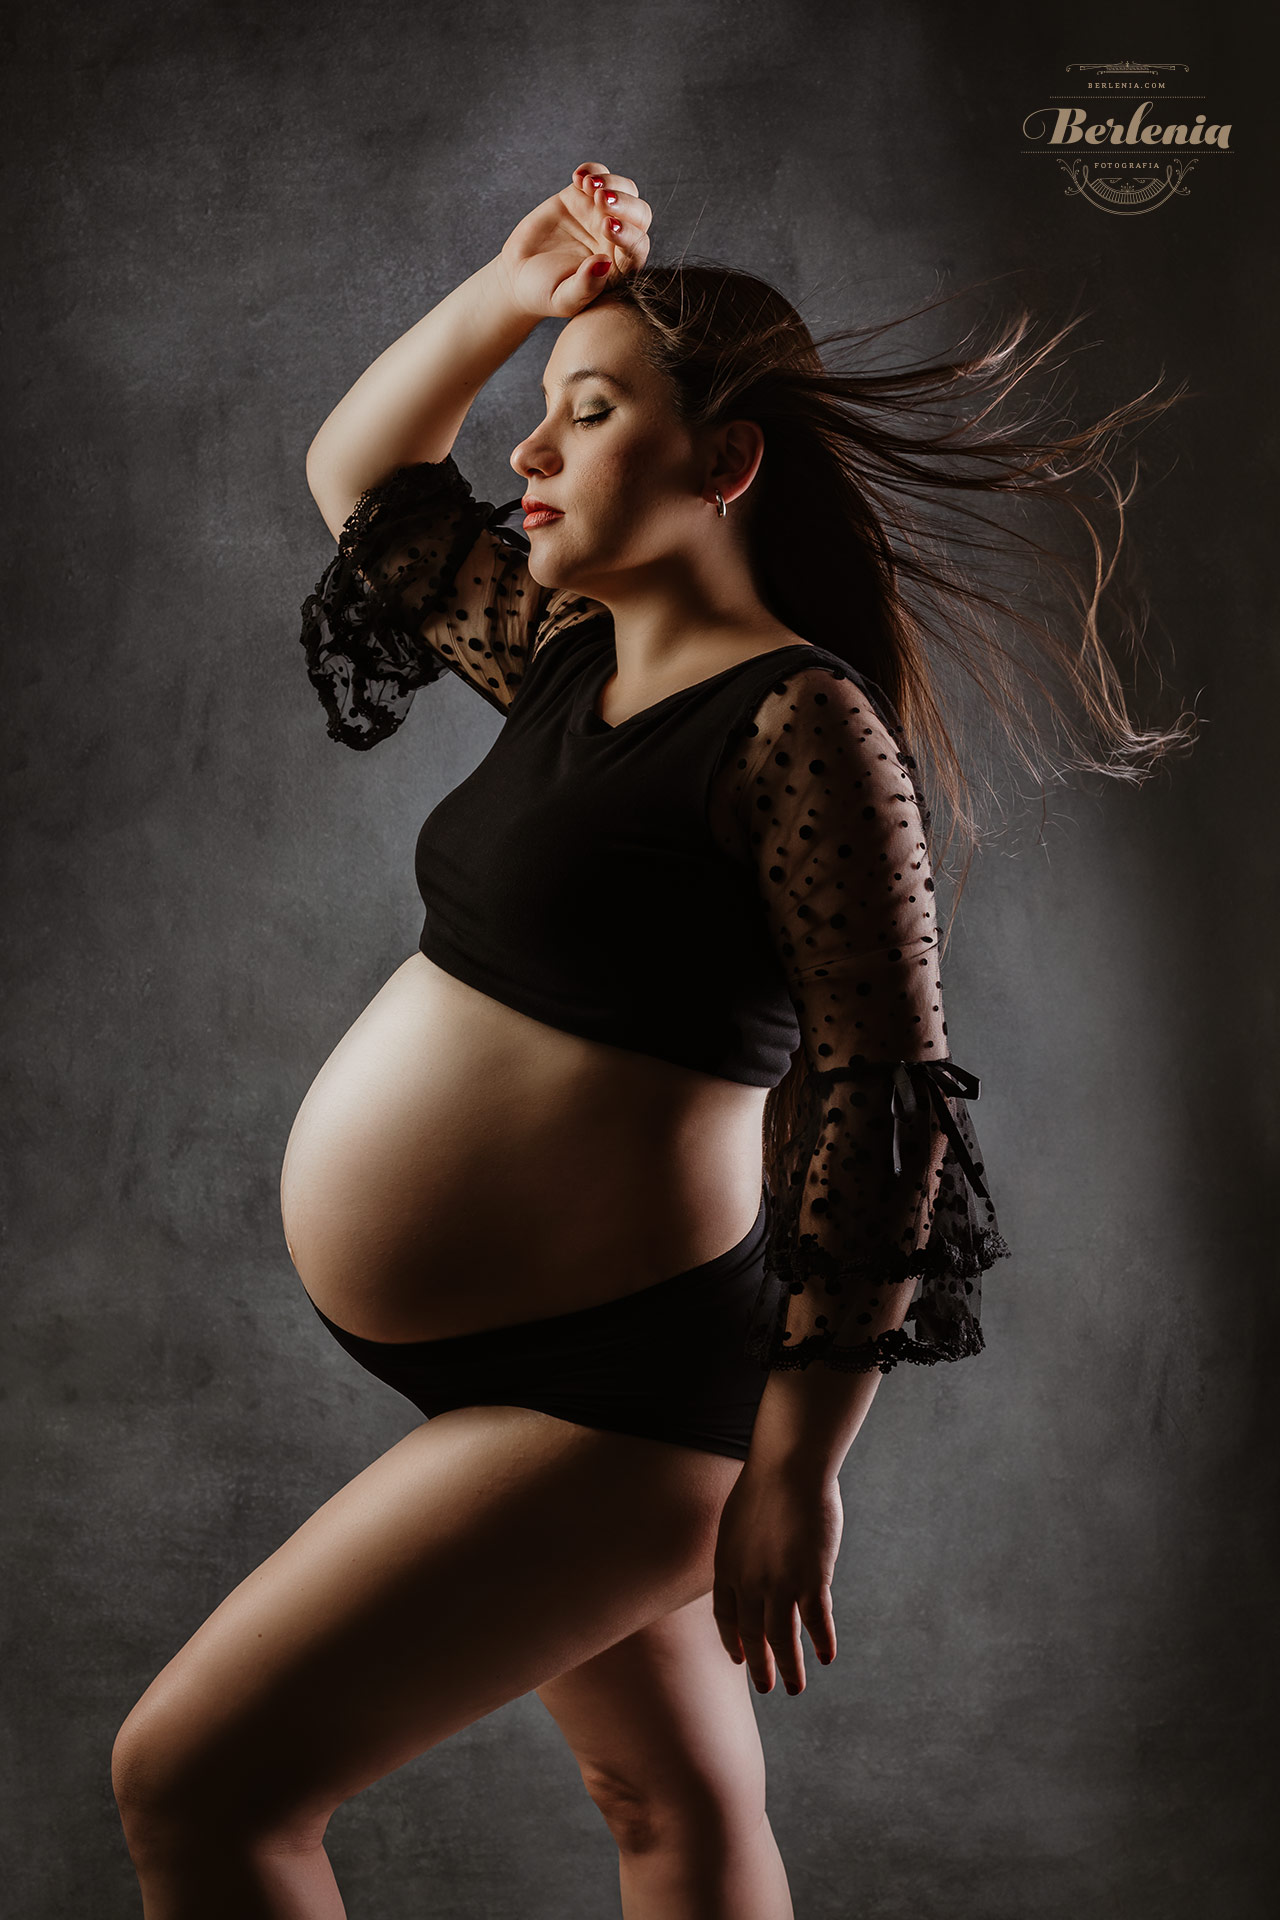 Fotografía de embarazo en estudio con pareja - Sesión de fotos embarazada - Villa Urquiza, CABA, Buenos Aires, Argentina - Berlenia Fotografía - 04